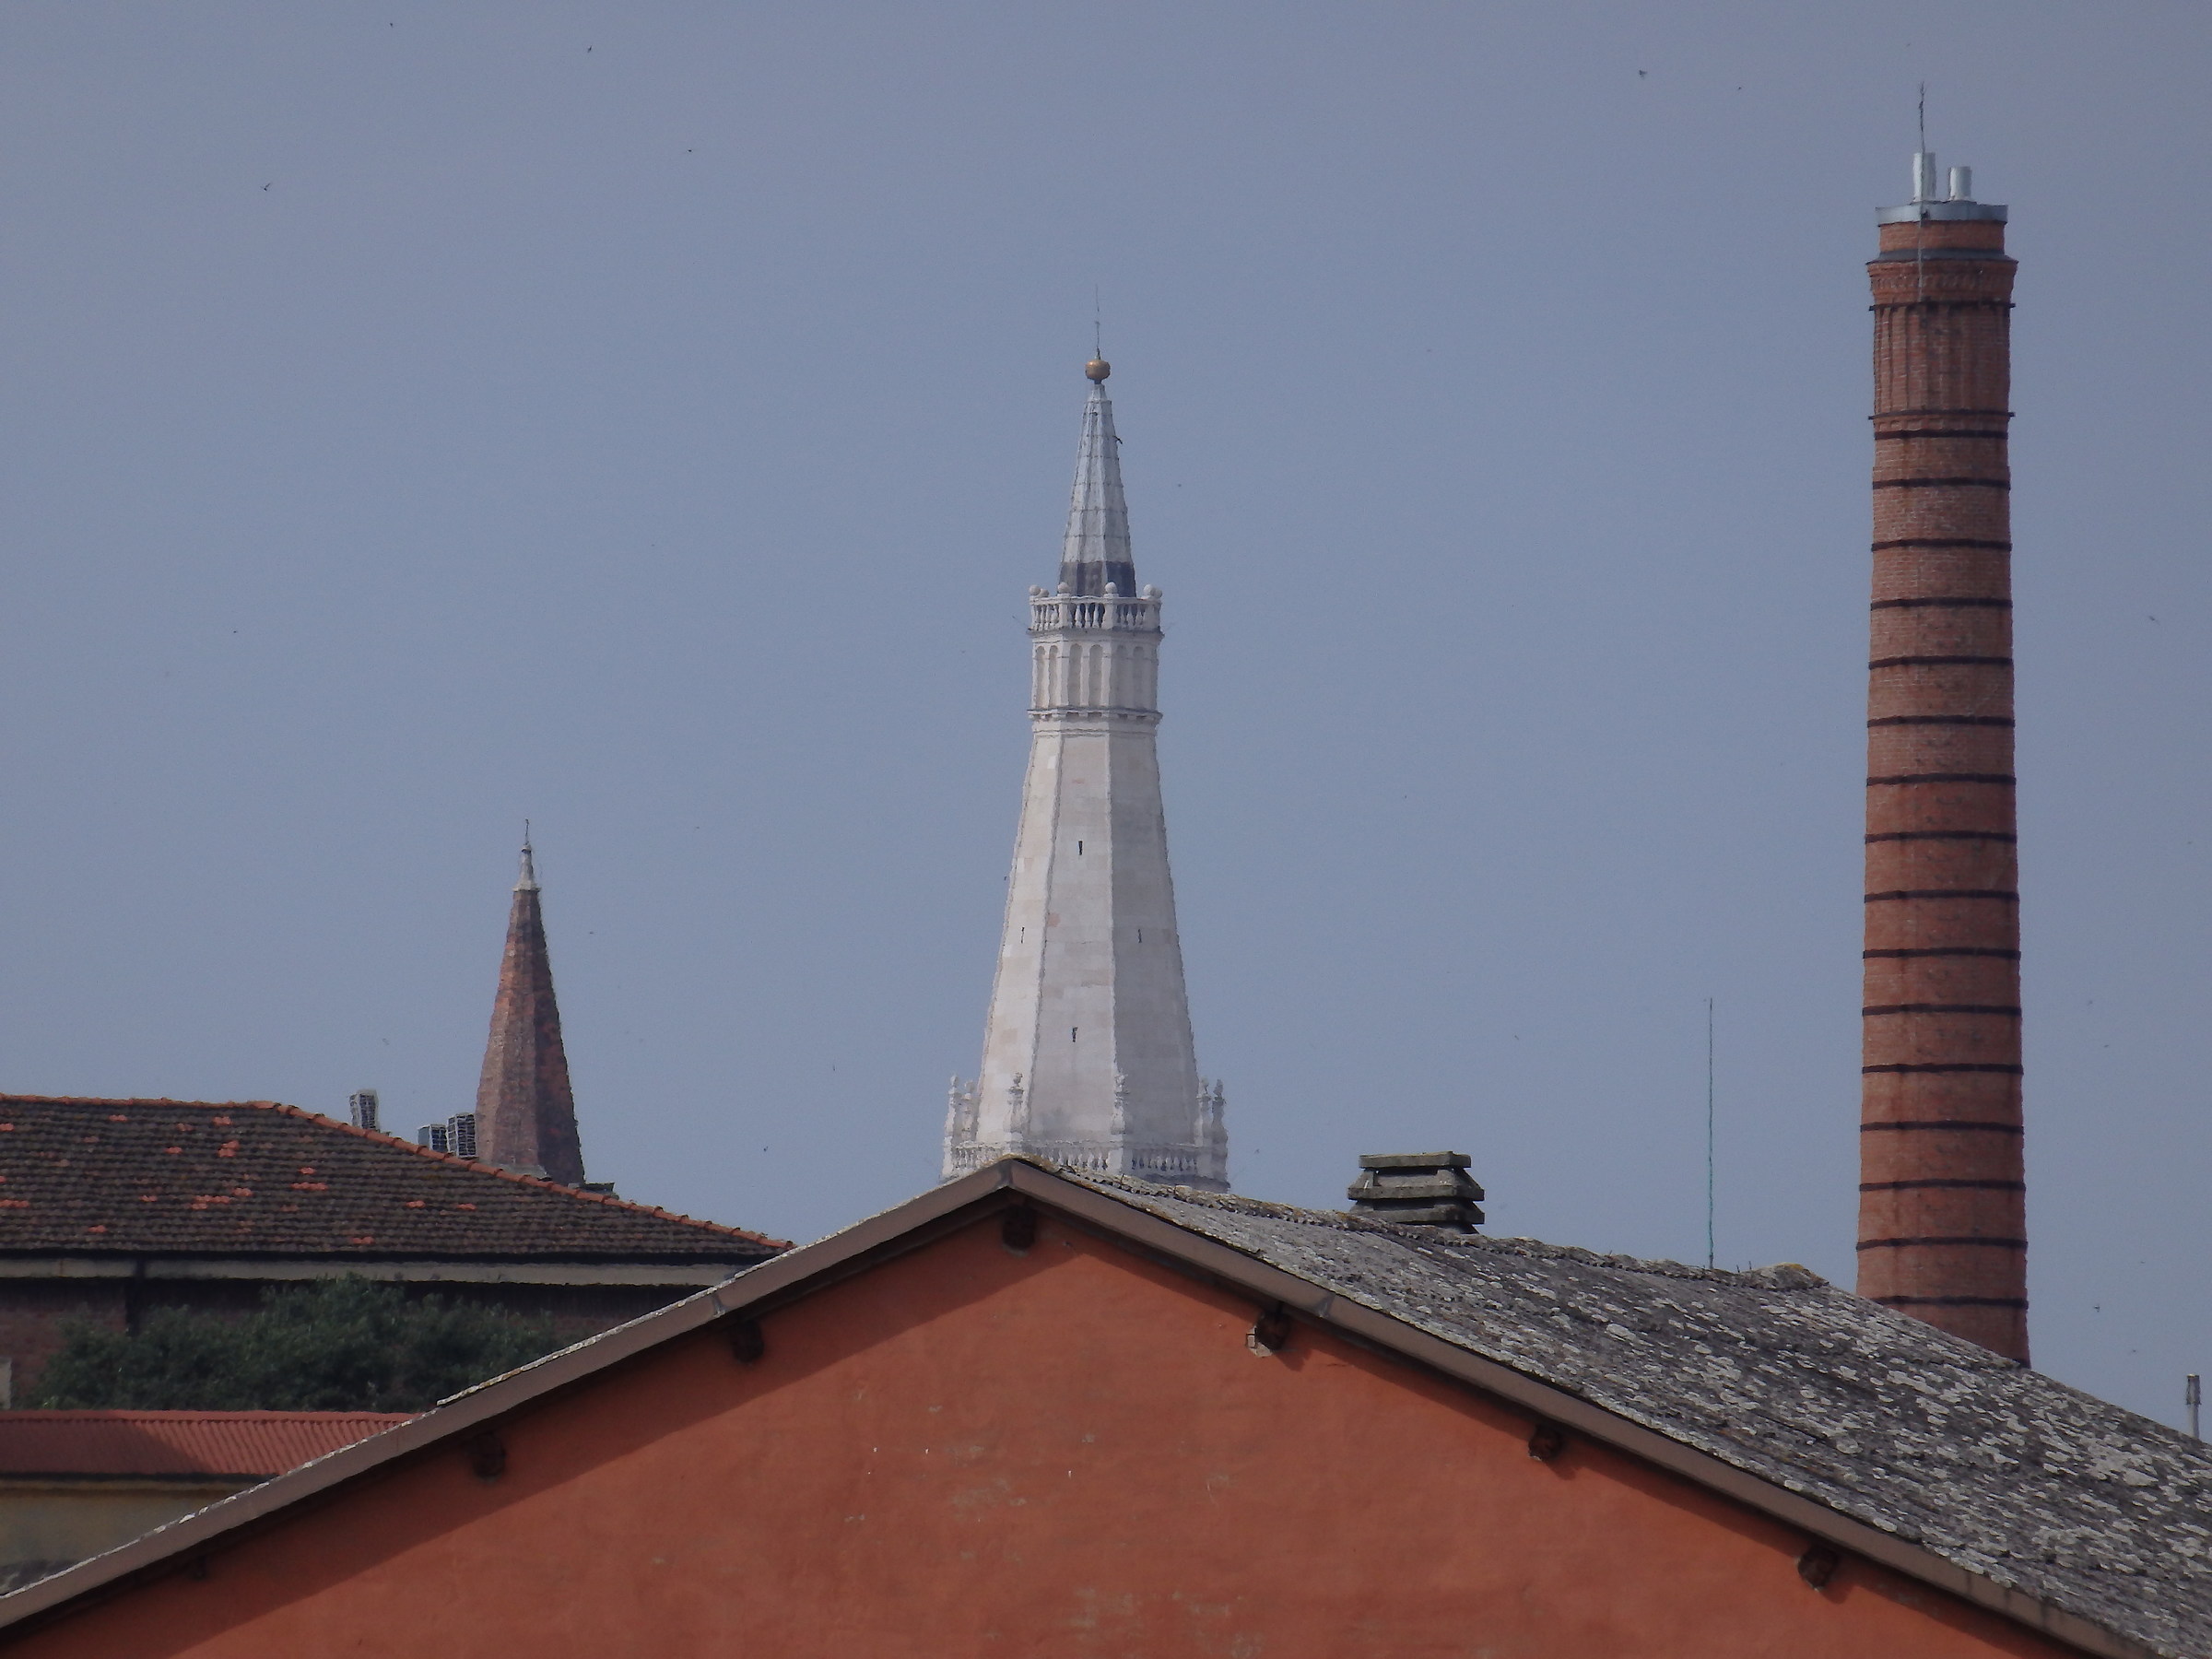 San Domenico, garlands, tobacco manufacture...